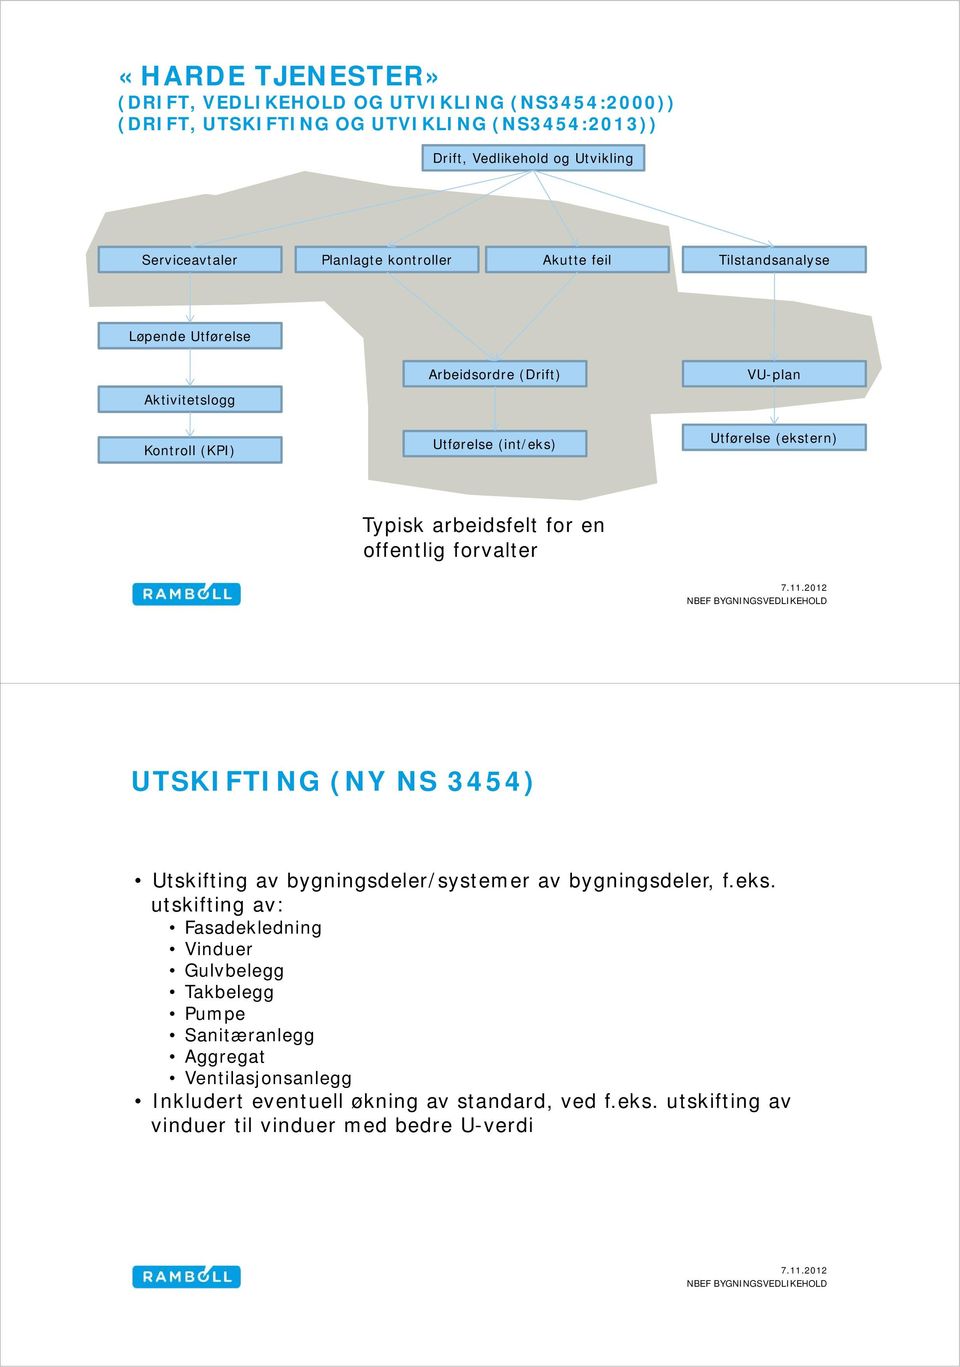 Typisk arbeidsfelt for en offentlig forvalter UTSKIFTING (NY NS 3454) Utskifting av bygningsdeler/systemer av bygningsdeler, f.eks.